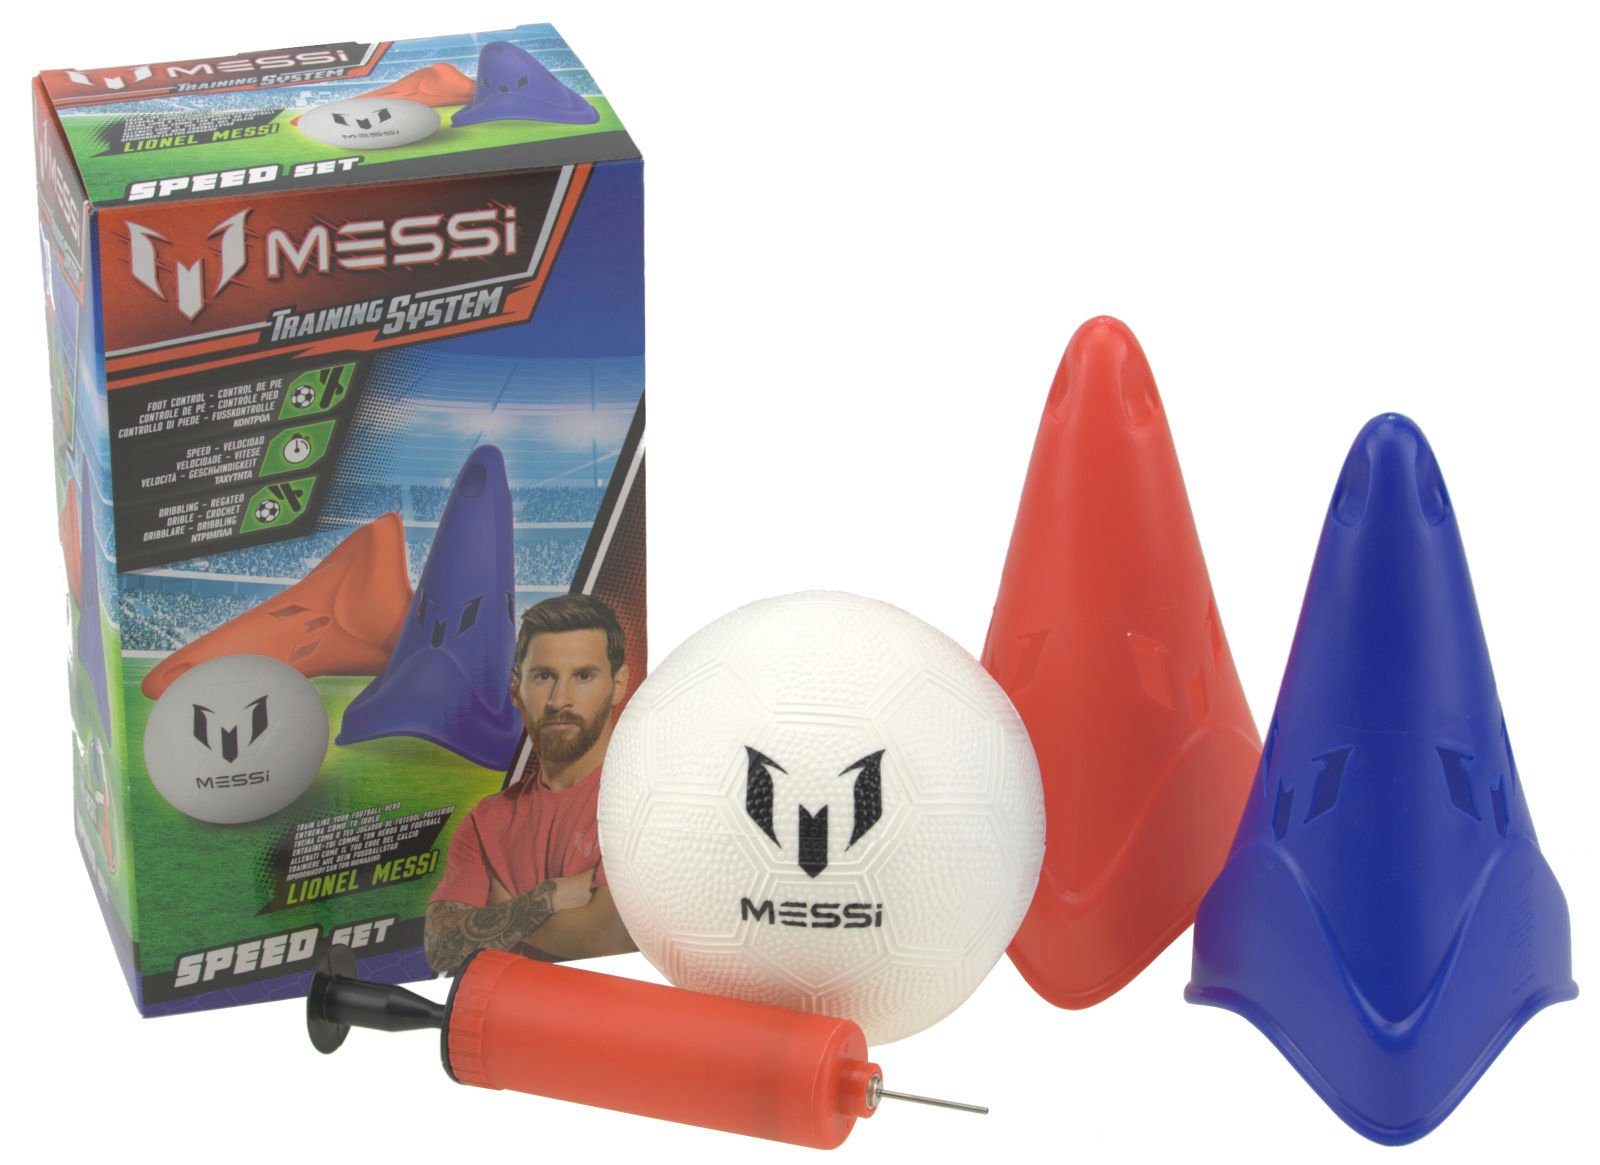 System Messi Training Pylonen Fußballtor und Fußball Speed mit Ball